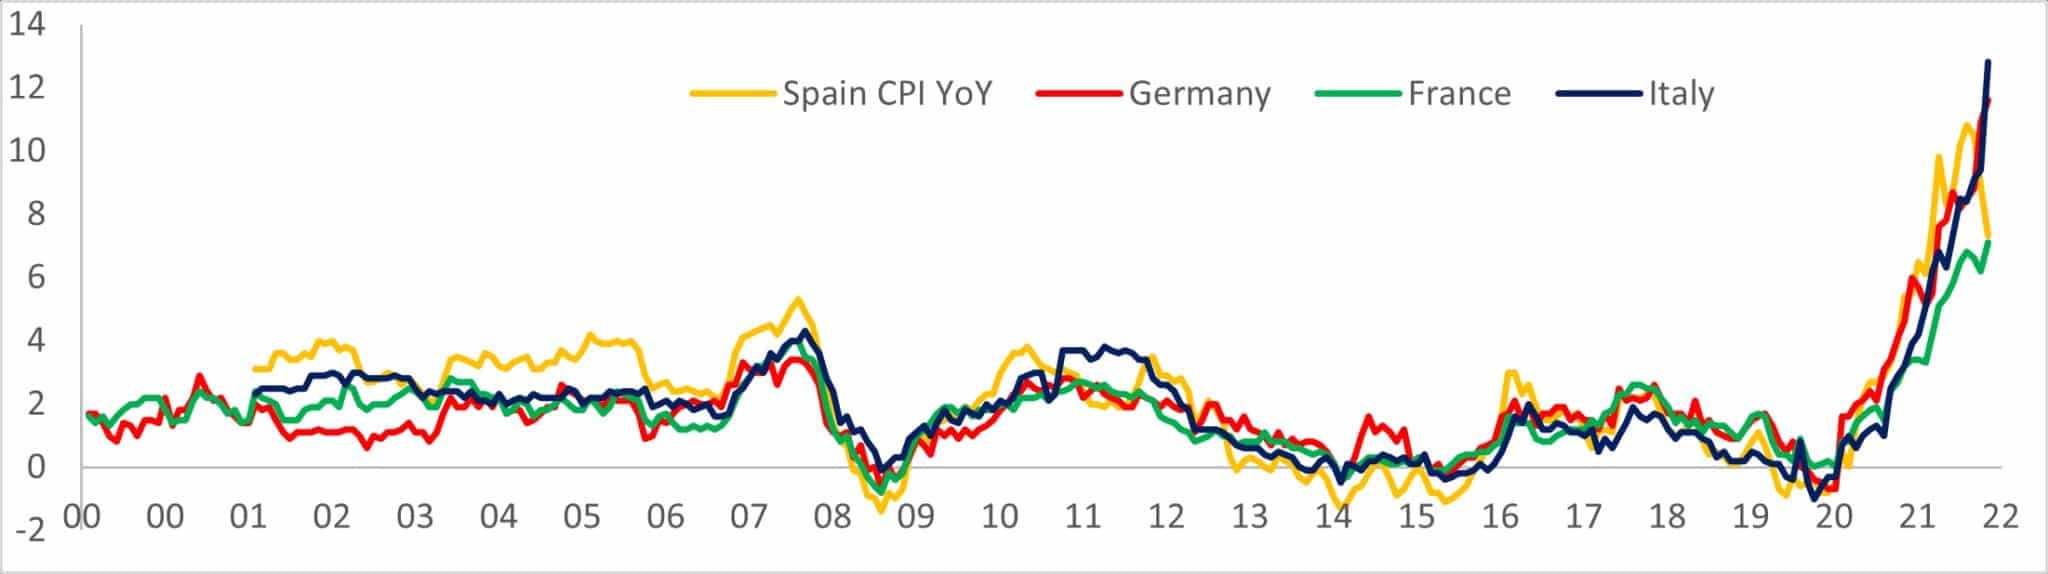 Gráfico que muestra el aumento interanual del IPC en España, Alemania, Francia e Italia desde 2000 hasta 2022